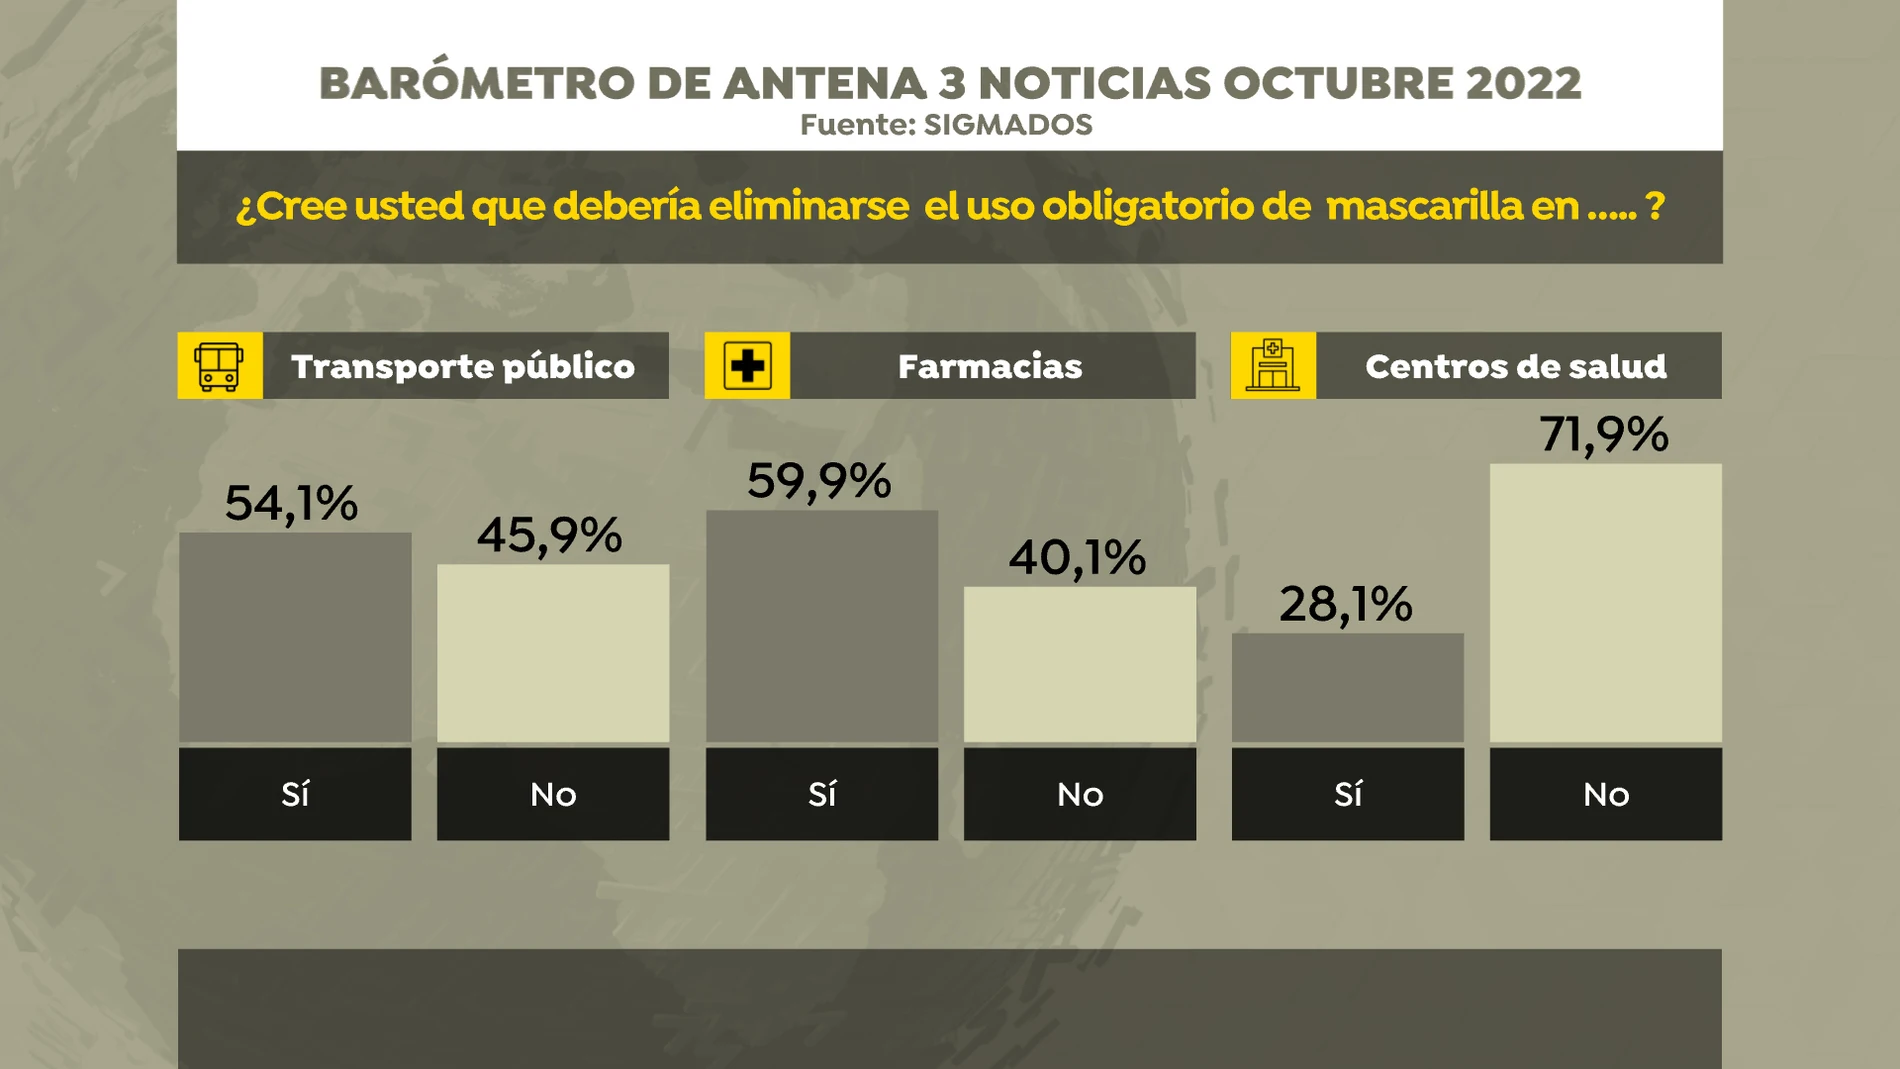 Barómetro de Antena 3 Noticias sobre el uso obligatorio de las mascarillas